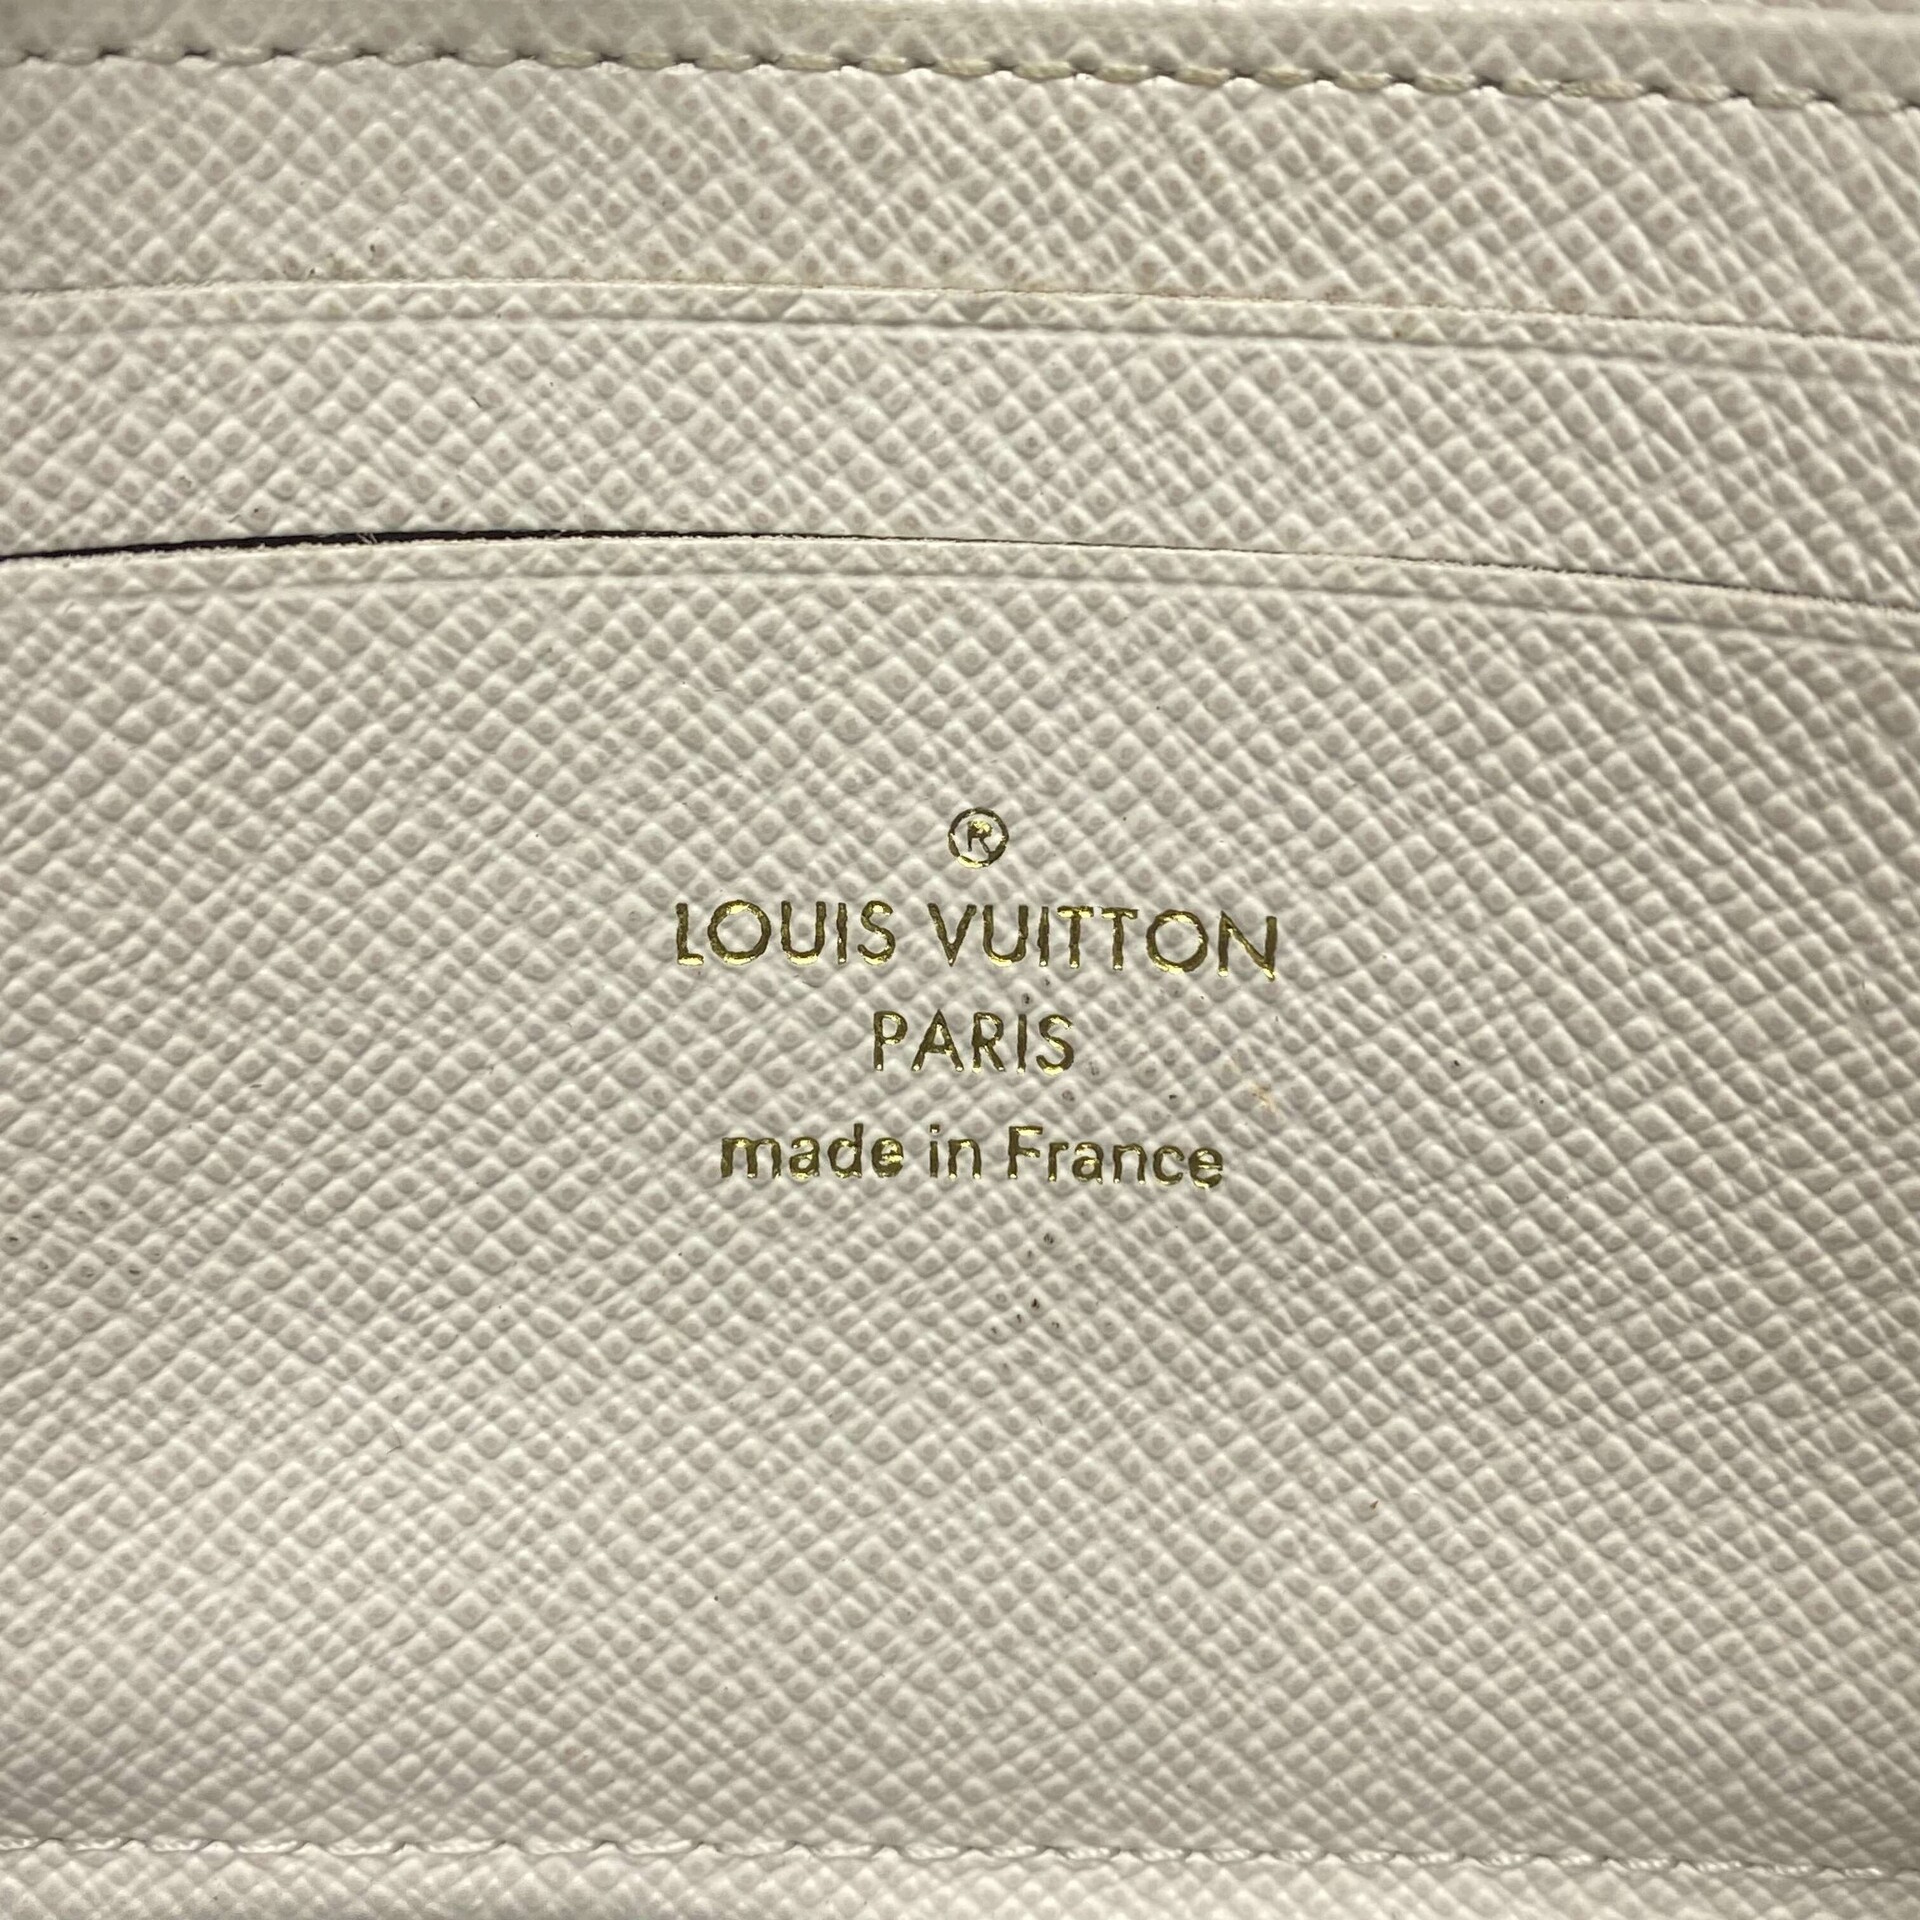 Carteira Louis Vuitton Craft